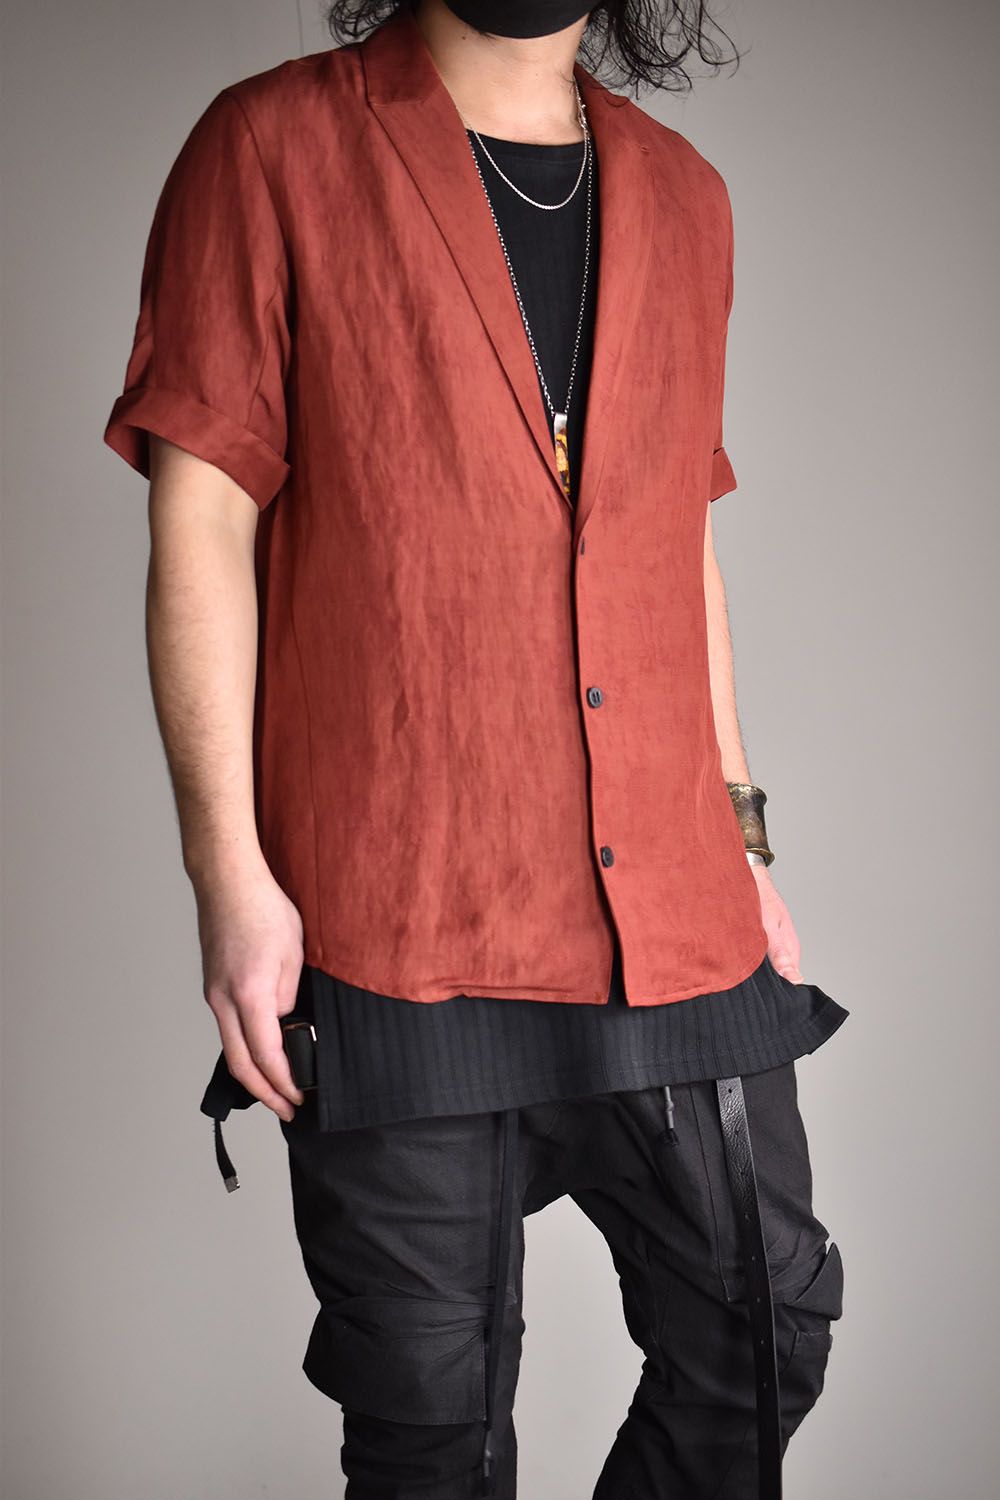 Linen×Rayon Tailor Shirts"Brick"/リネン×レーヨン塩縮染半袖テーラーシャツ"ブリック"